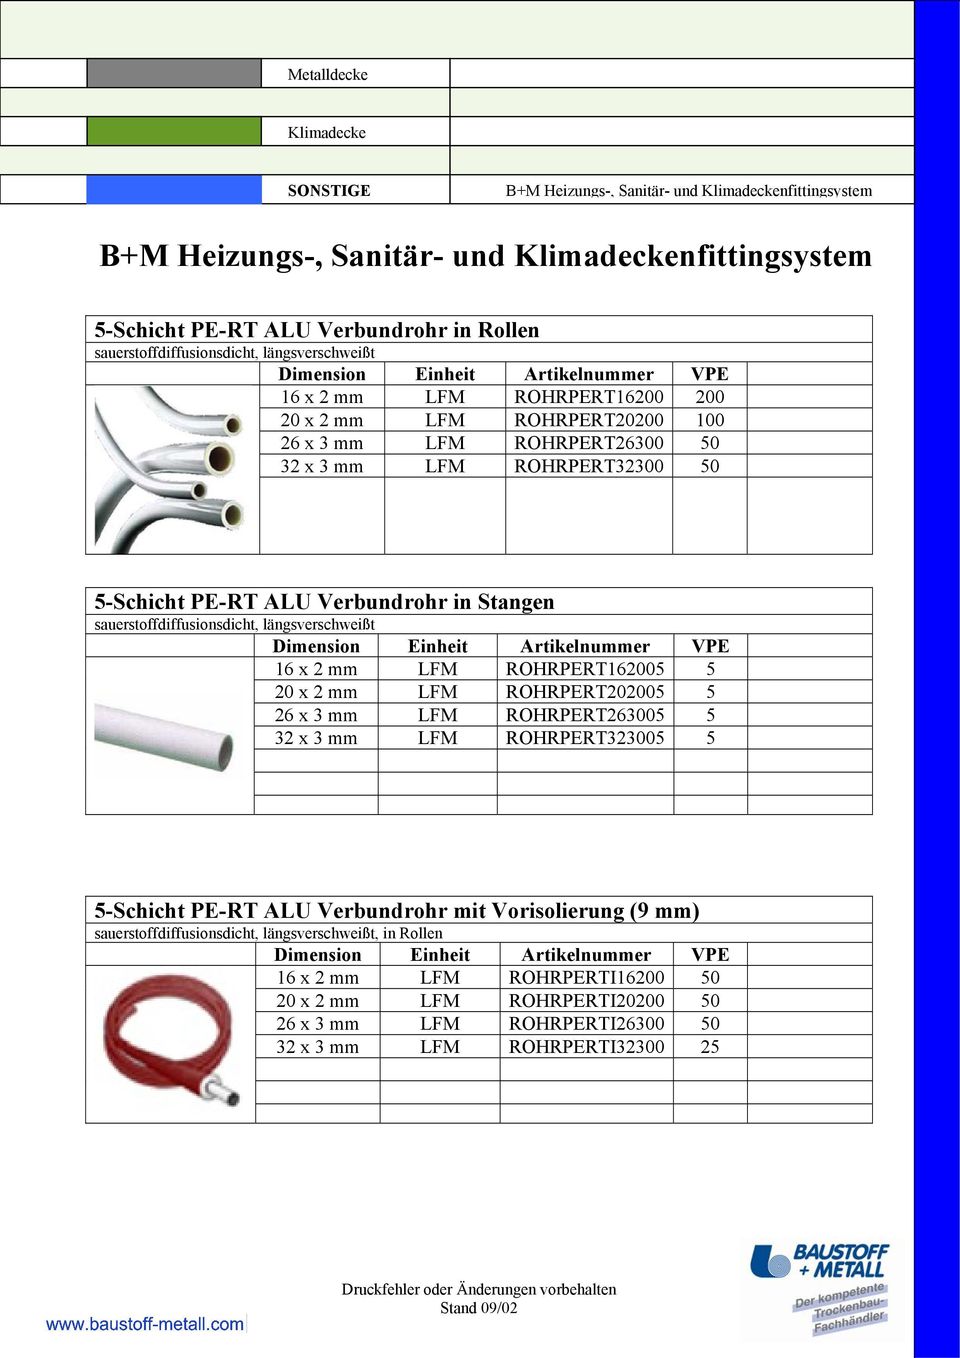 20 x 2 mm LFM ROHRPERT202005 5 26 x 3 mm LFM ROHRPERT263005 5 32 x 3 mm LFM ROHRPERT323005 5 5-Schicht PE-RT ALU Verbundrohr mit Vorisolierung (9 mm)